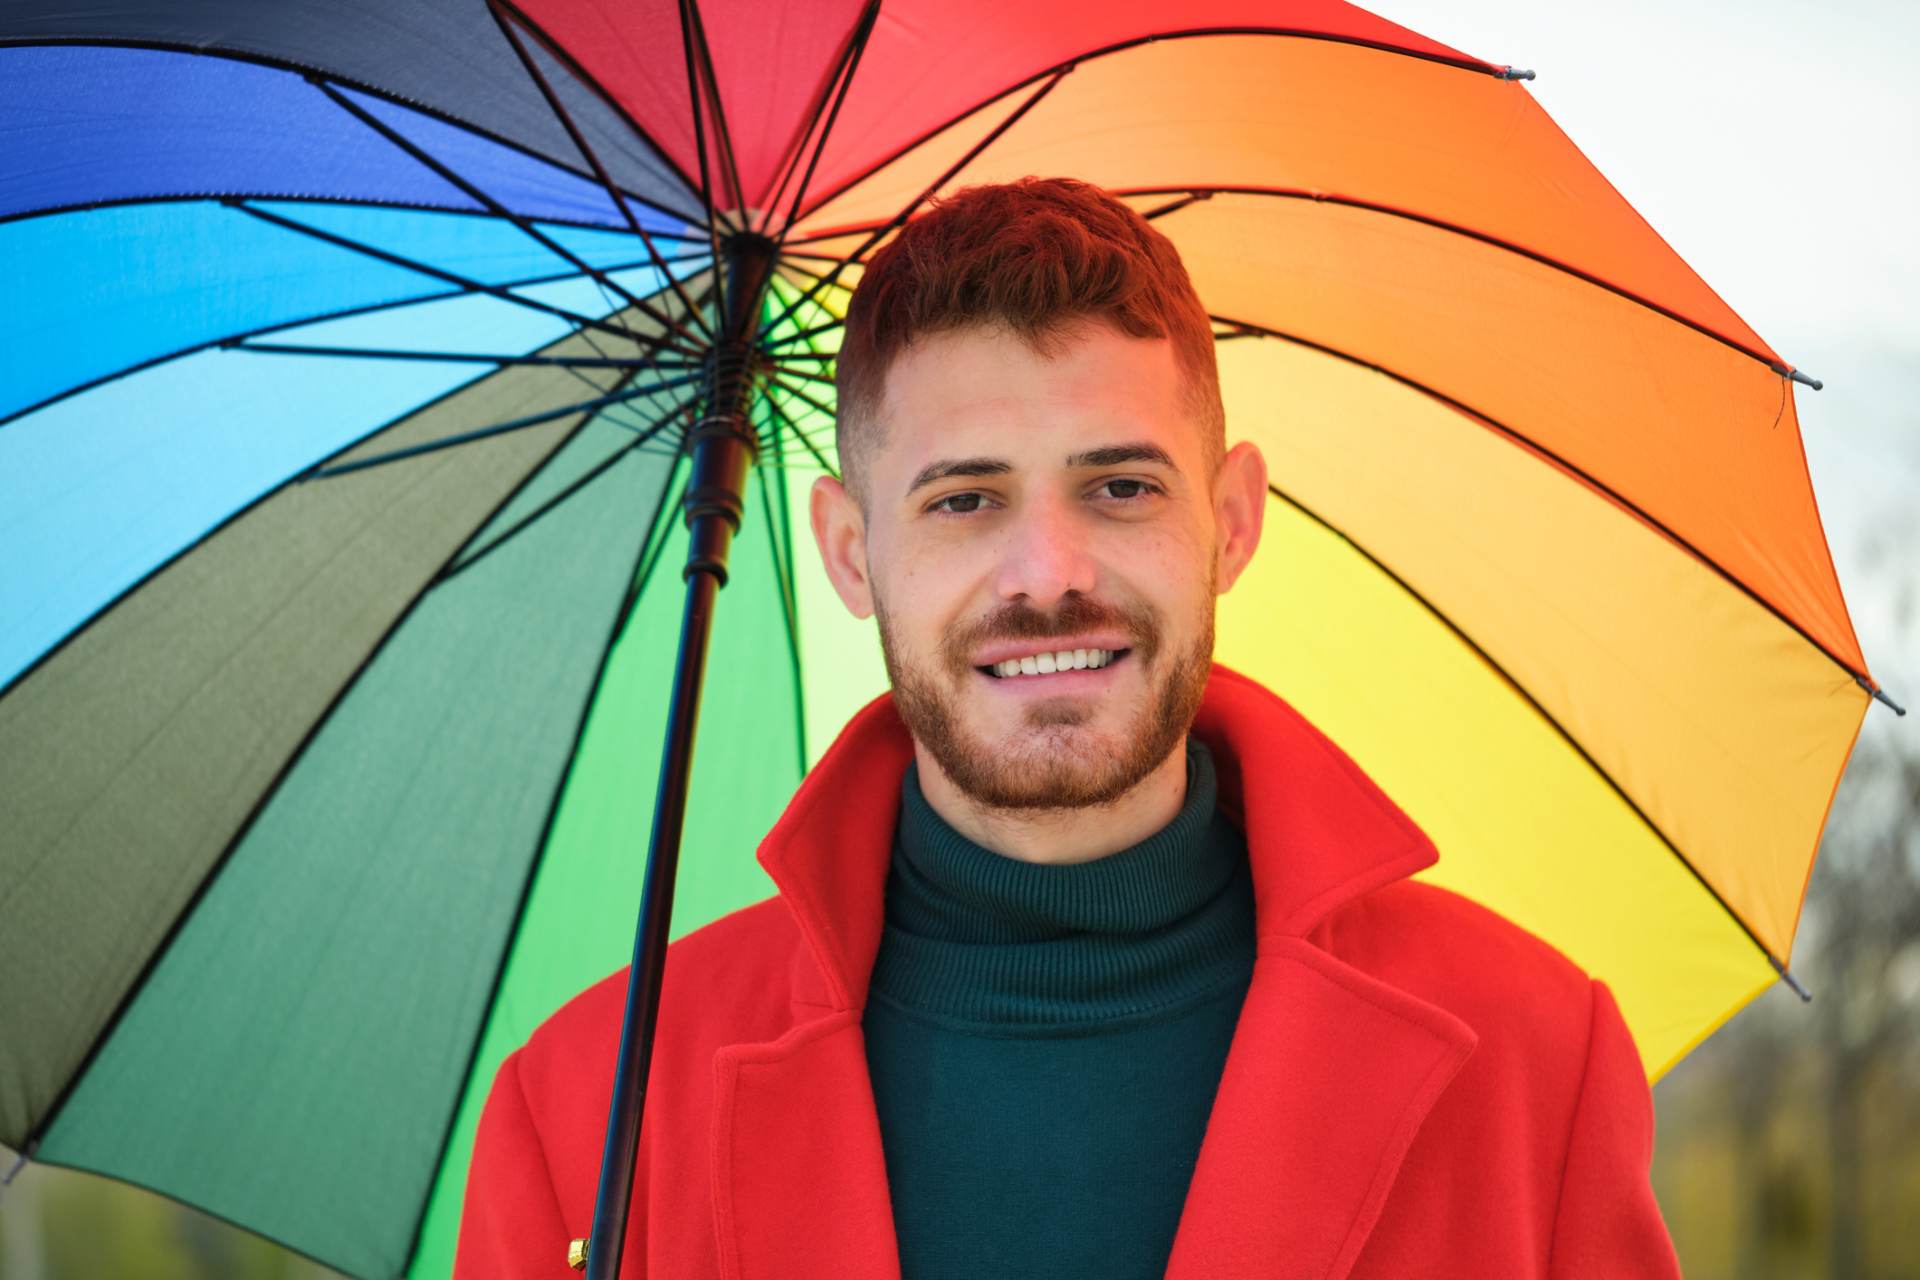 Vacances gay-friendly : 5 idées pour mettre en image ses souvenirs de voyage